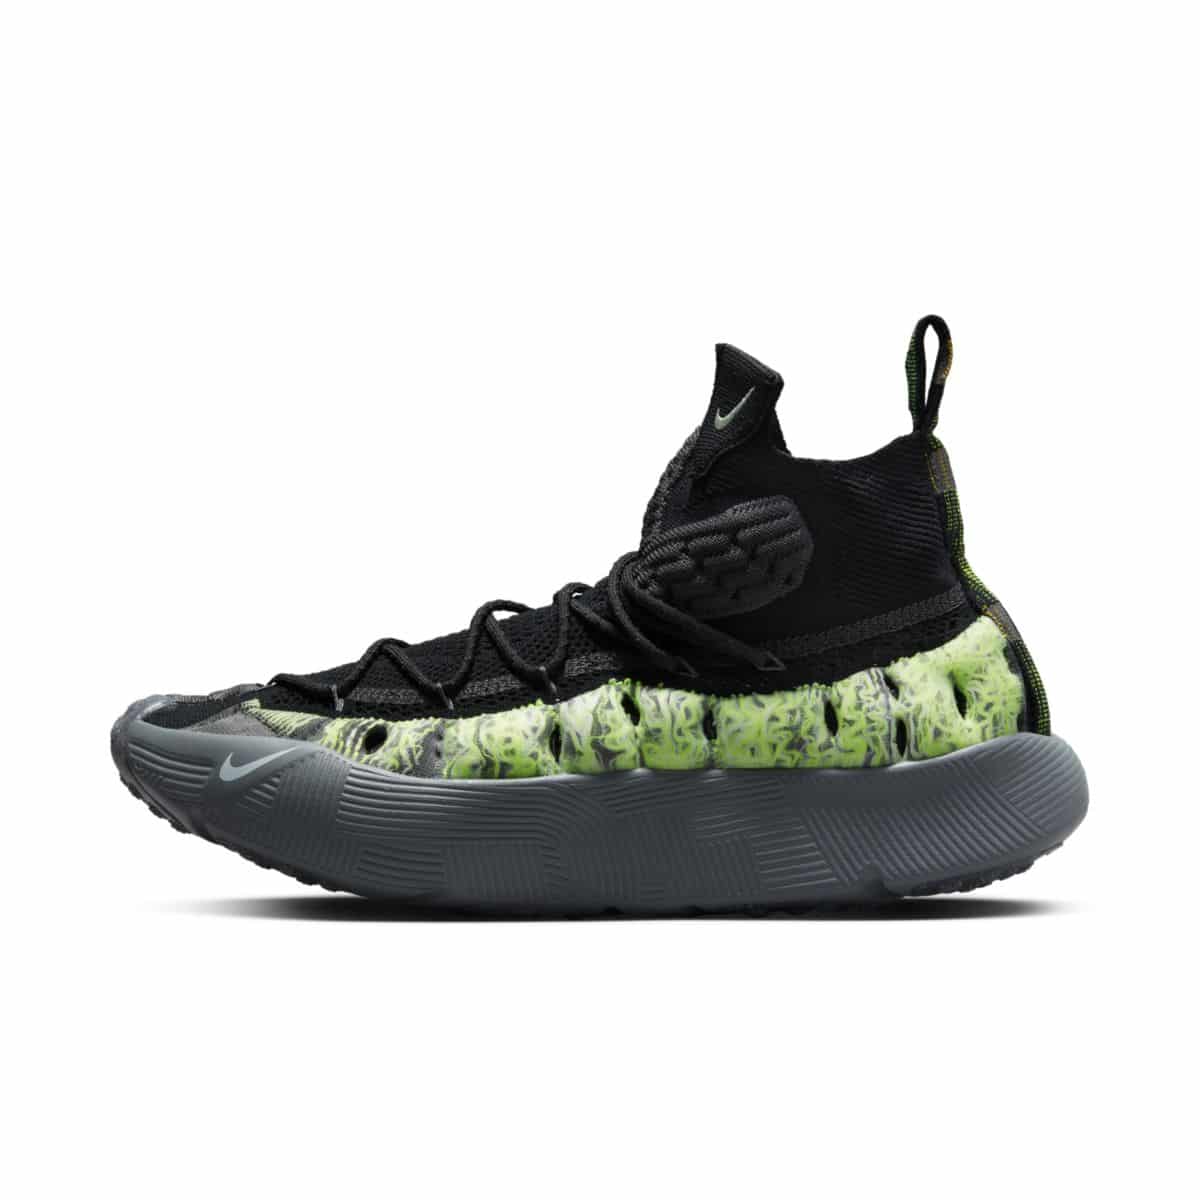 Nike ISPA Sense Flyknit Black Neon Green CW3203-003 2